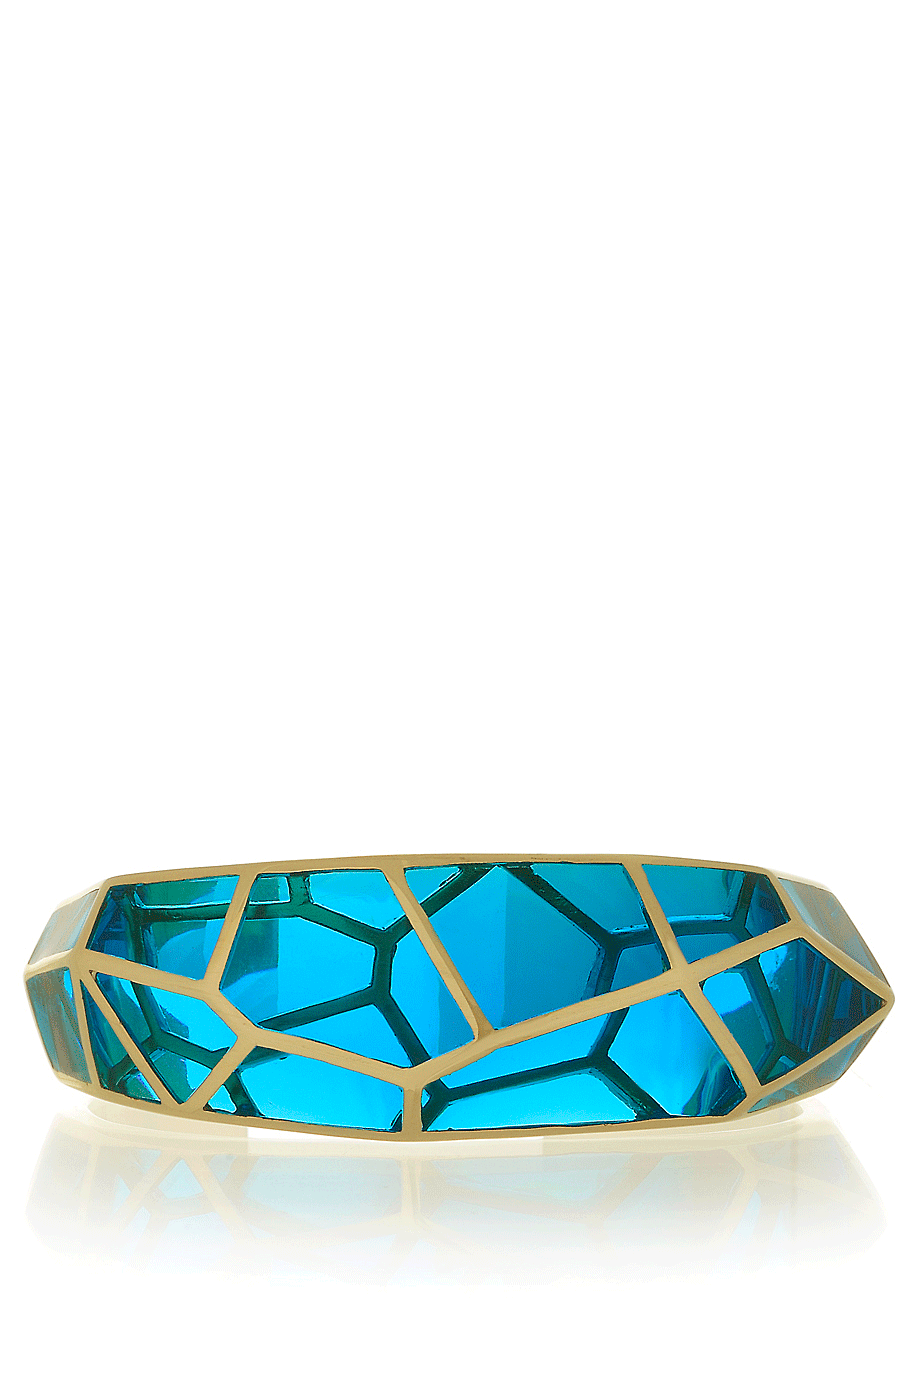 Μπλε Βραχιόλι - Isharya | Κοσμήματα